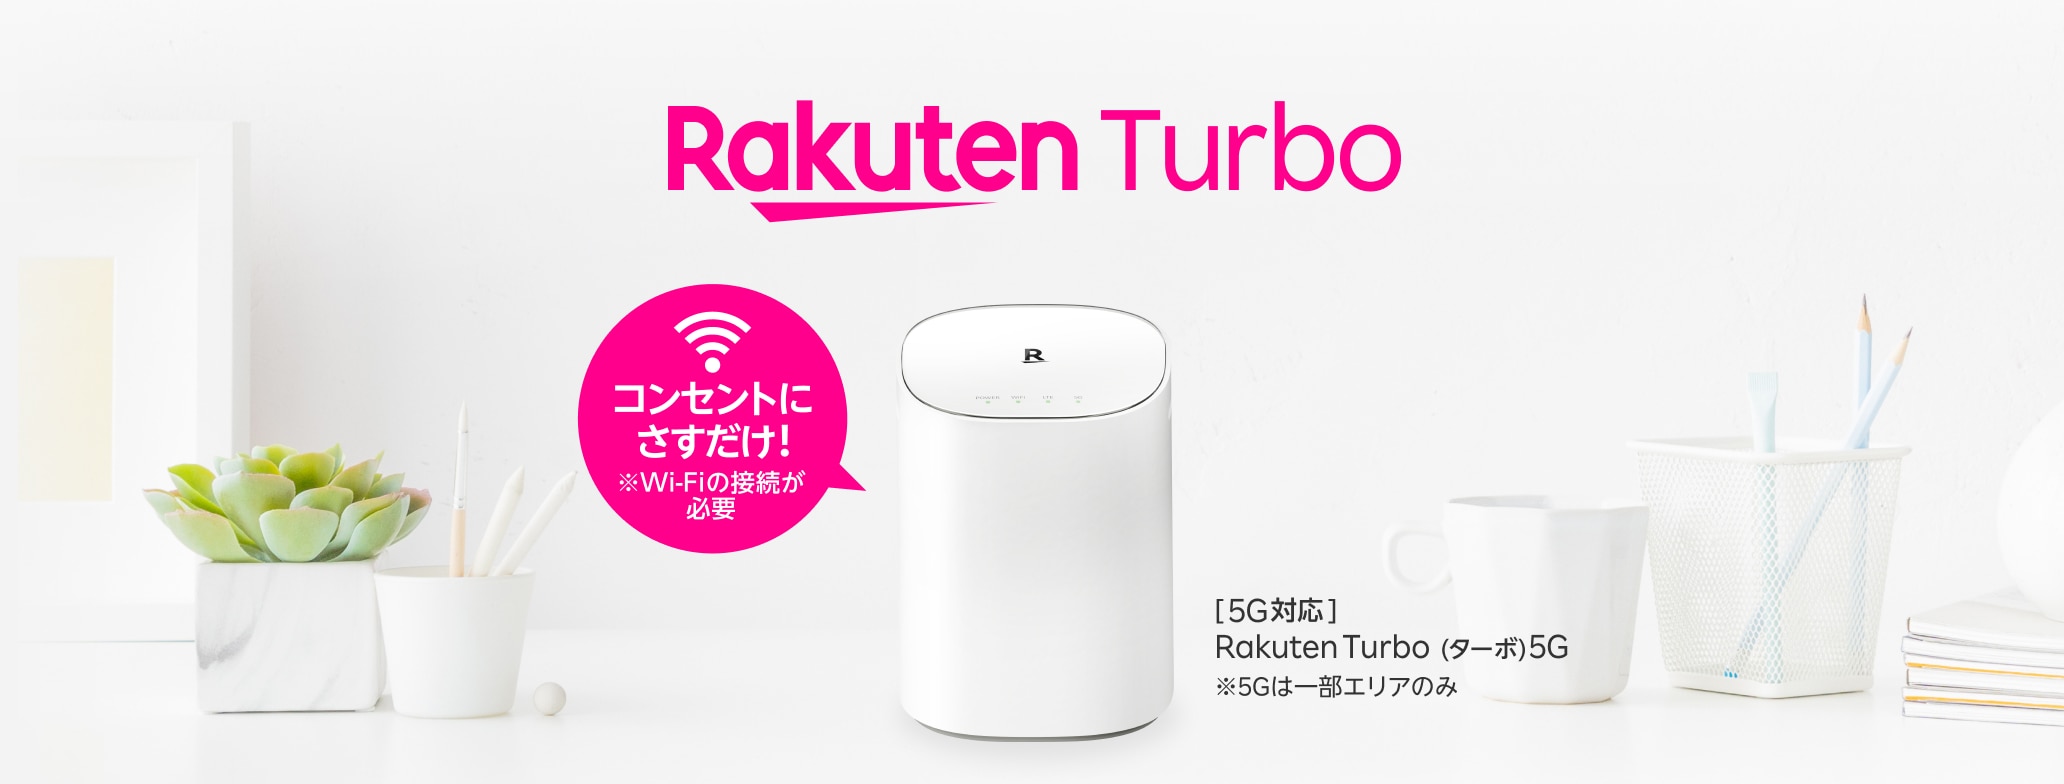 コンセントにさすだけ! ※Wi-Fiの接続が必要 [5G対応]Rakuten Turbo(ターボ)5G ※5Gは一部エリアのみ